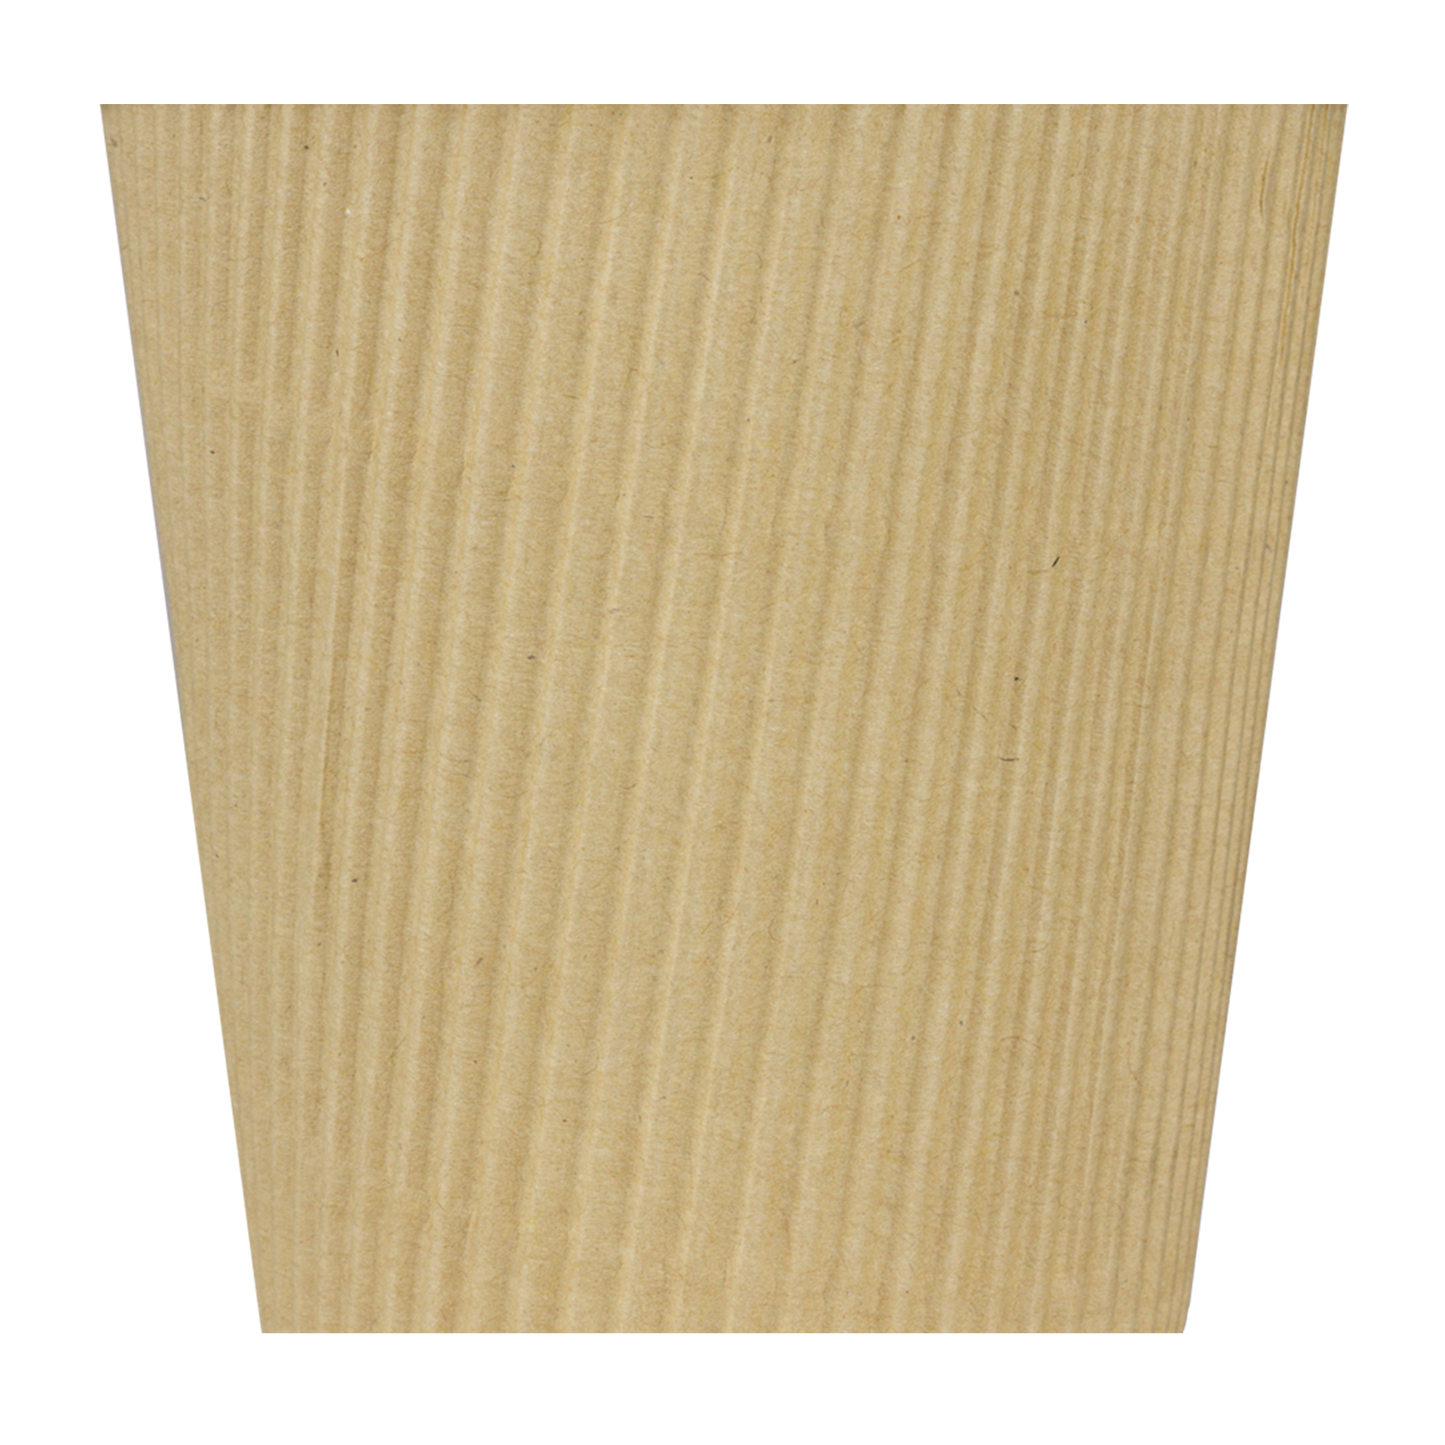 Karat 10oz Ripple Paper Hot Cups - Kraft (90mm) - 500 ct